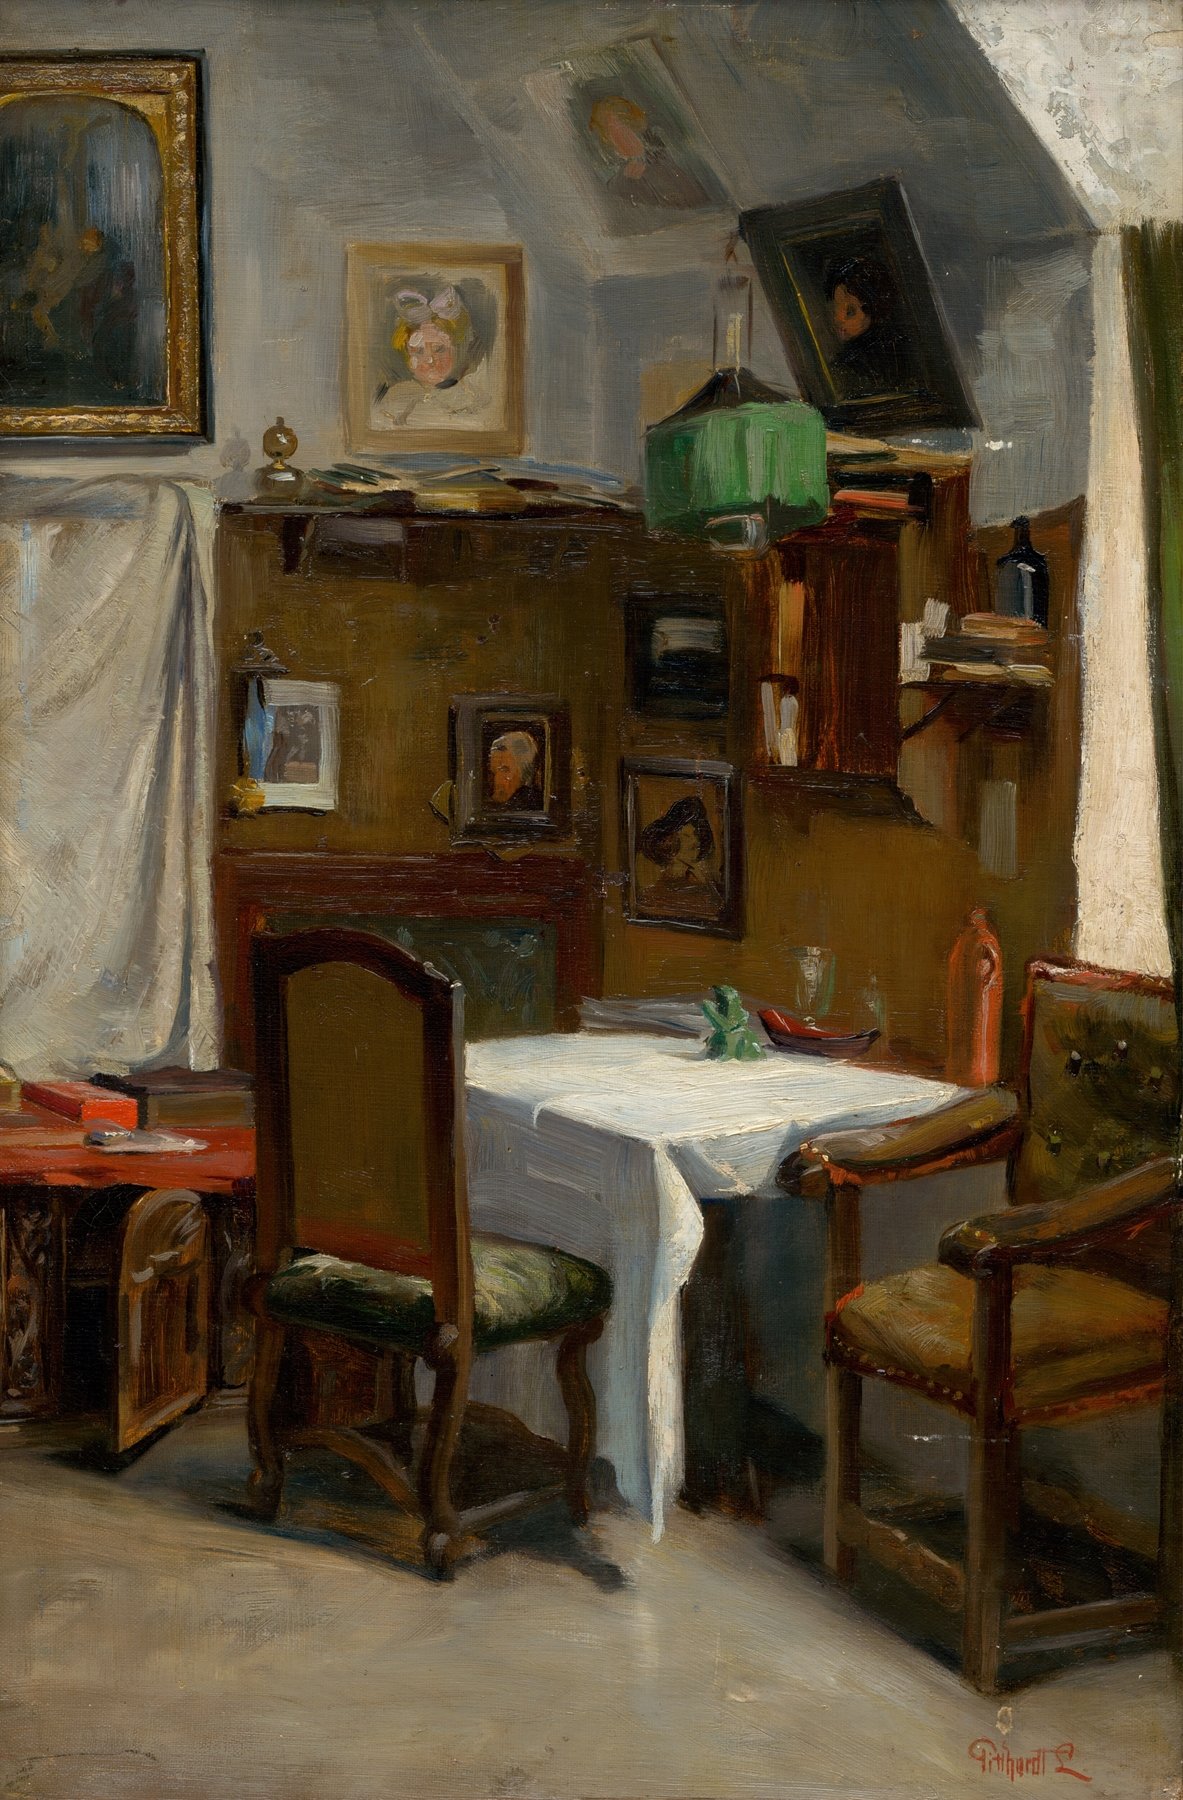 Study of a Munich Atelier (1890)